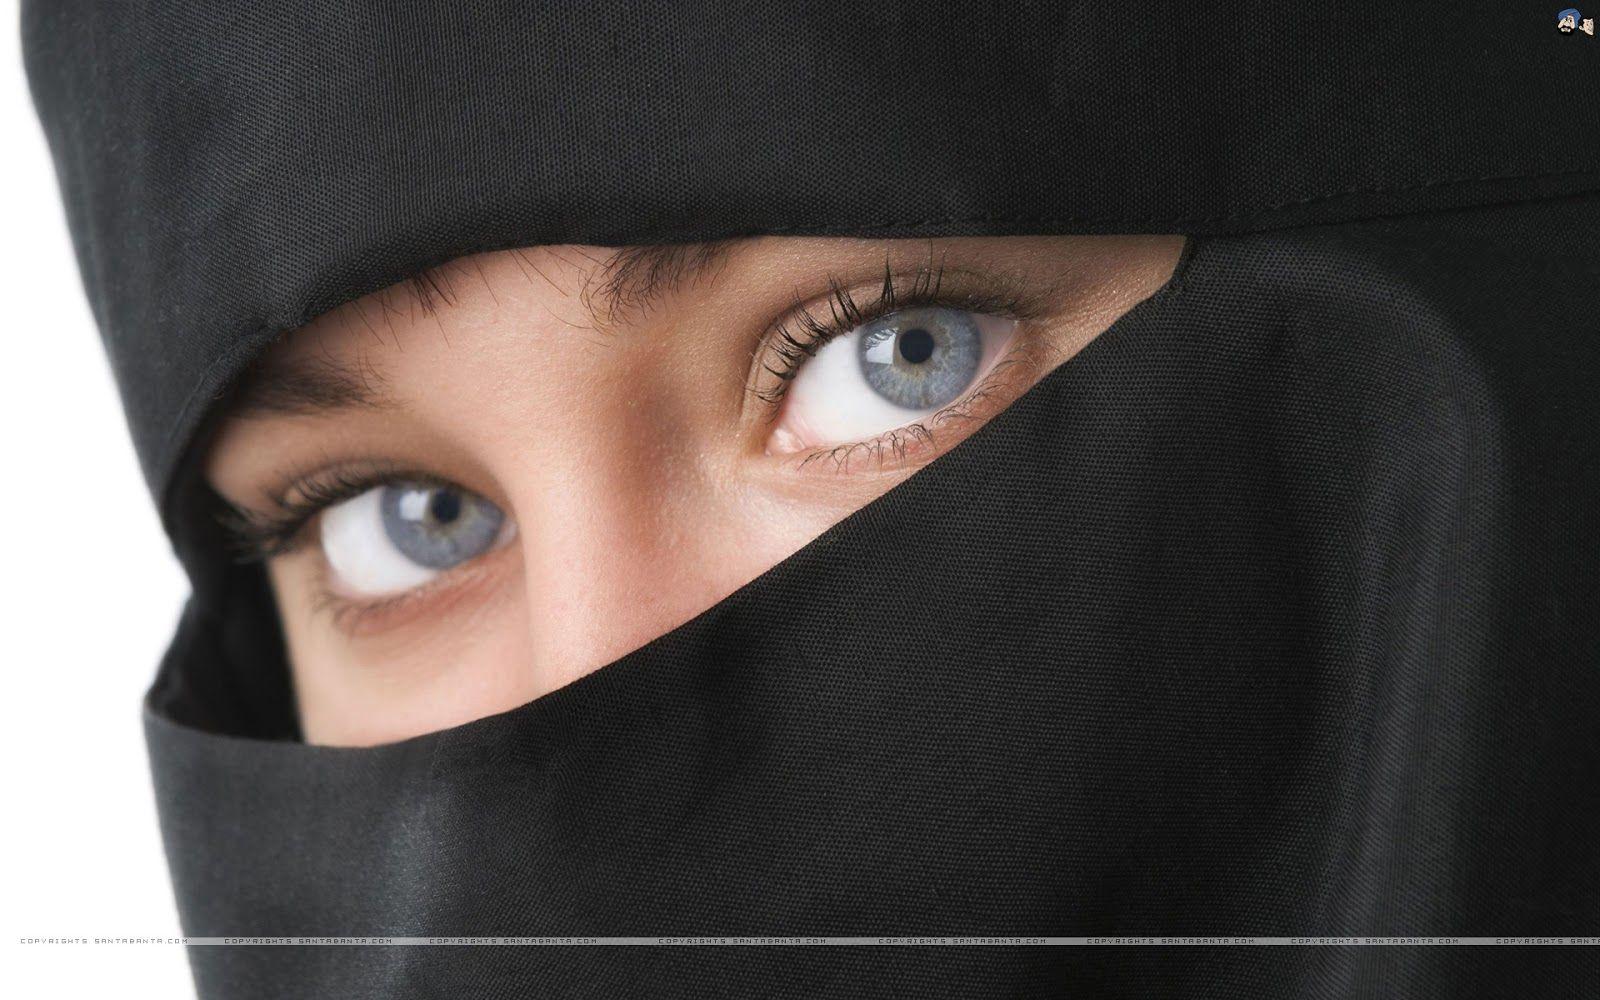 88 Download Gambar Hijab Keren HD Terbaru